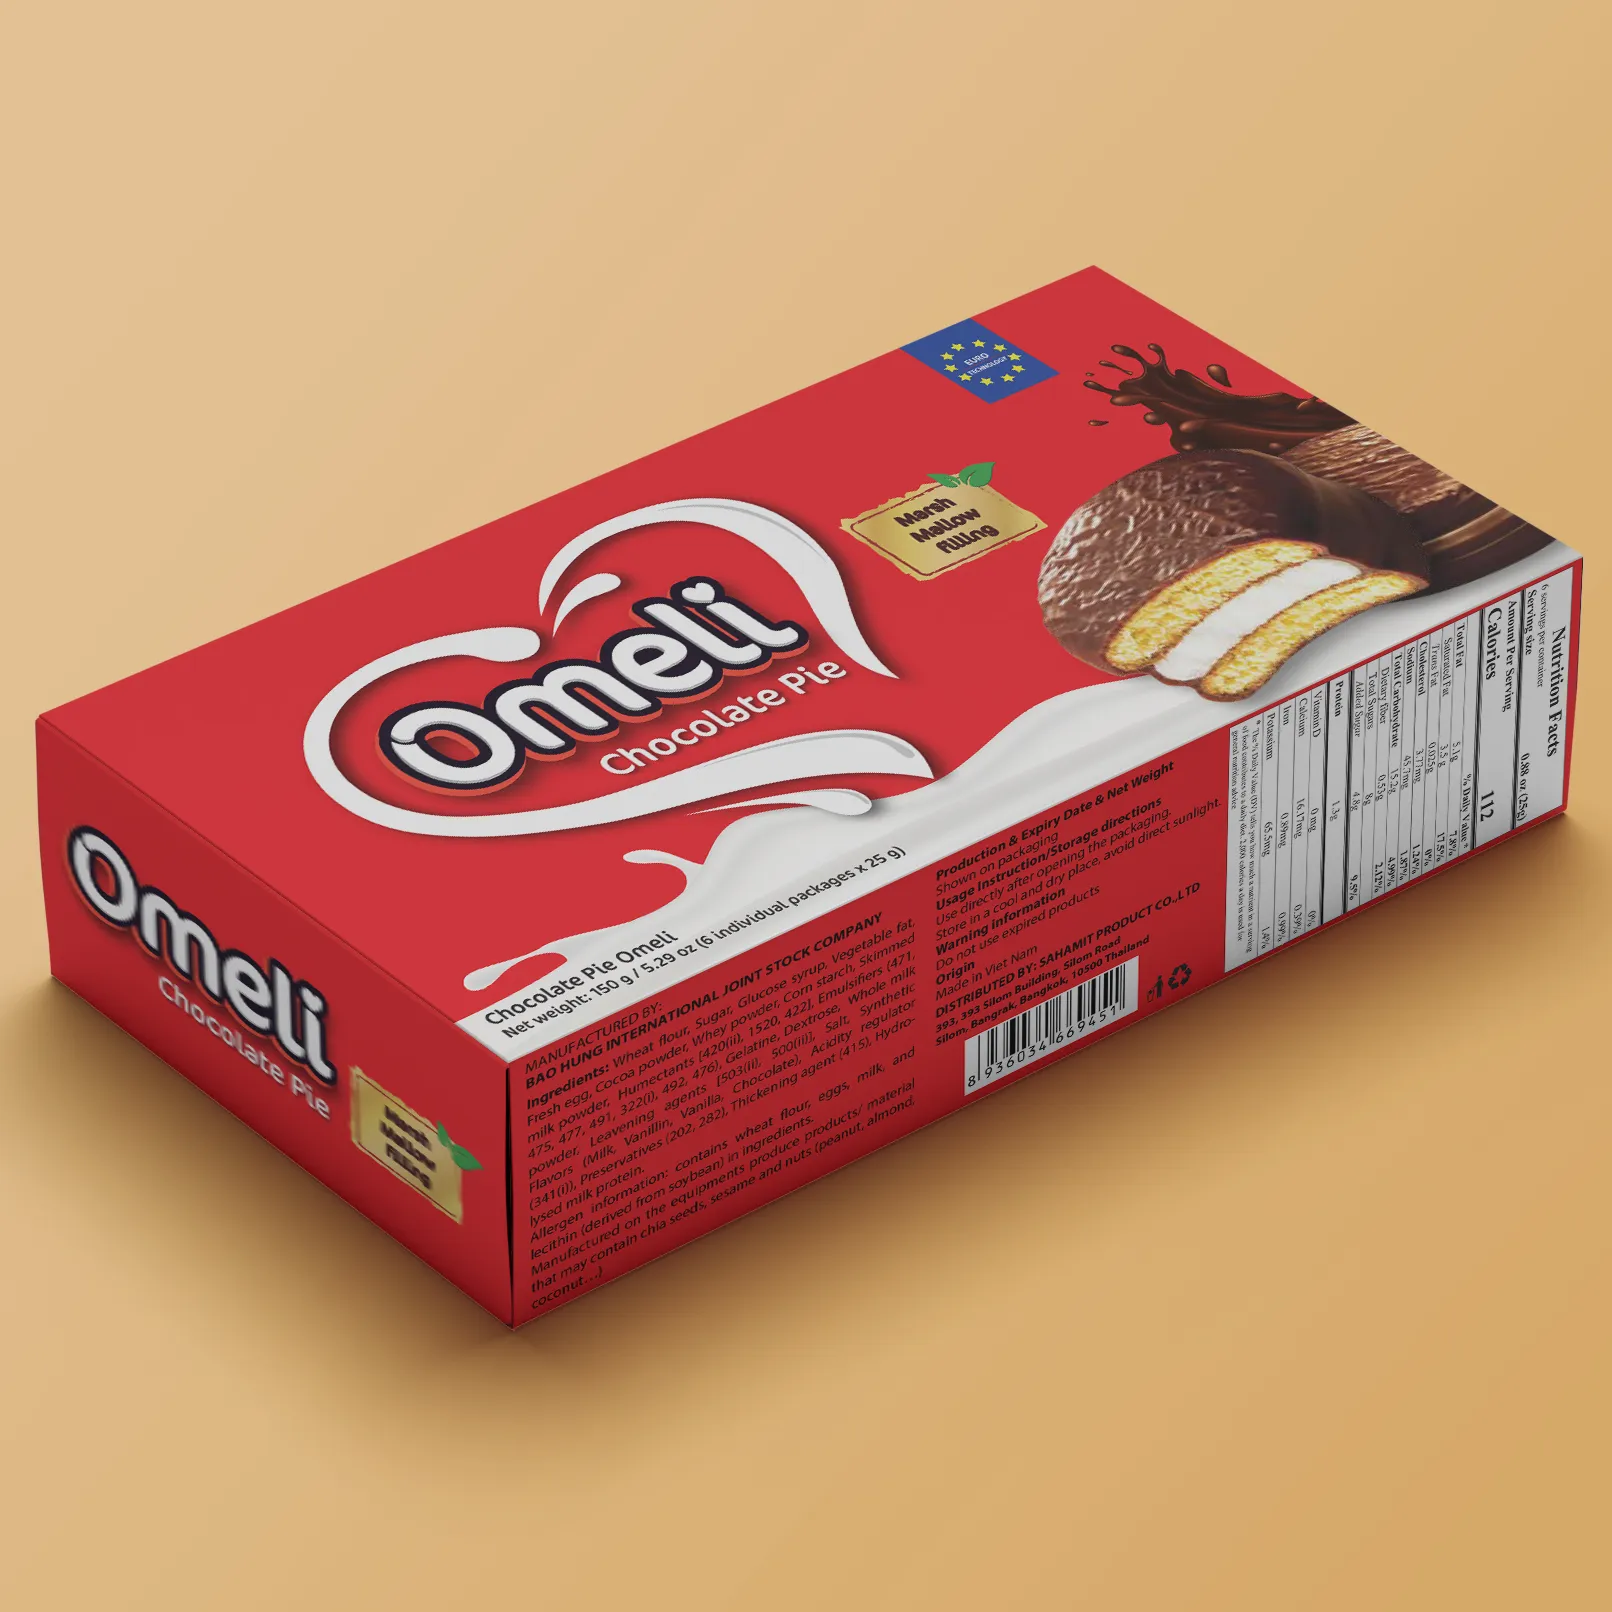 Omeli-Tarta de Chocolate/Chocopie, caja de 150g con ISO 22000:2018-HALAL-Exportación de Vietnam, marca de calidad Premium, venta al por mayor